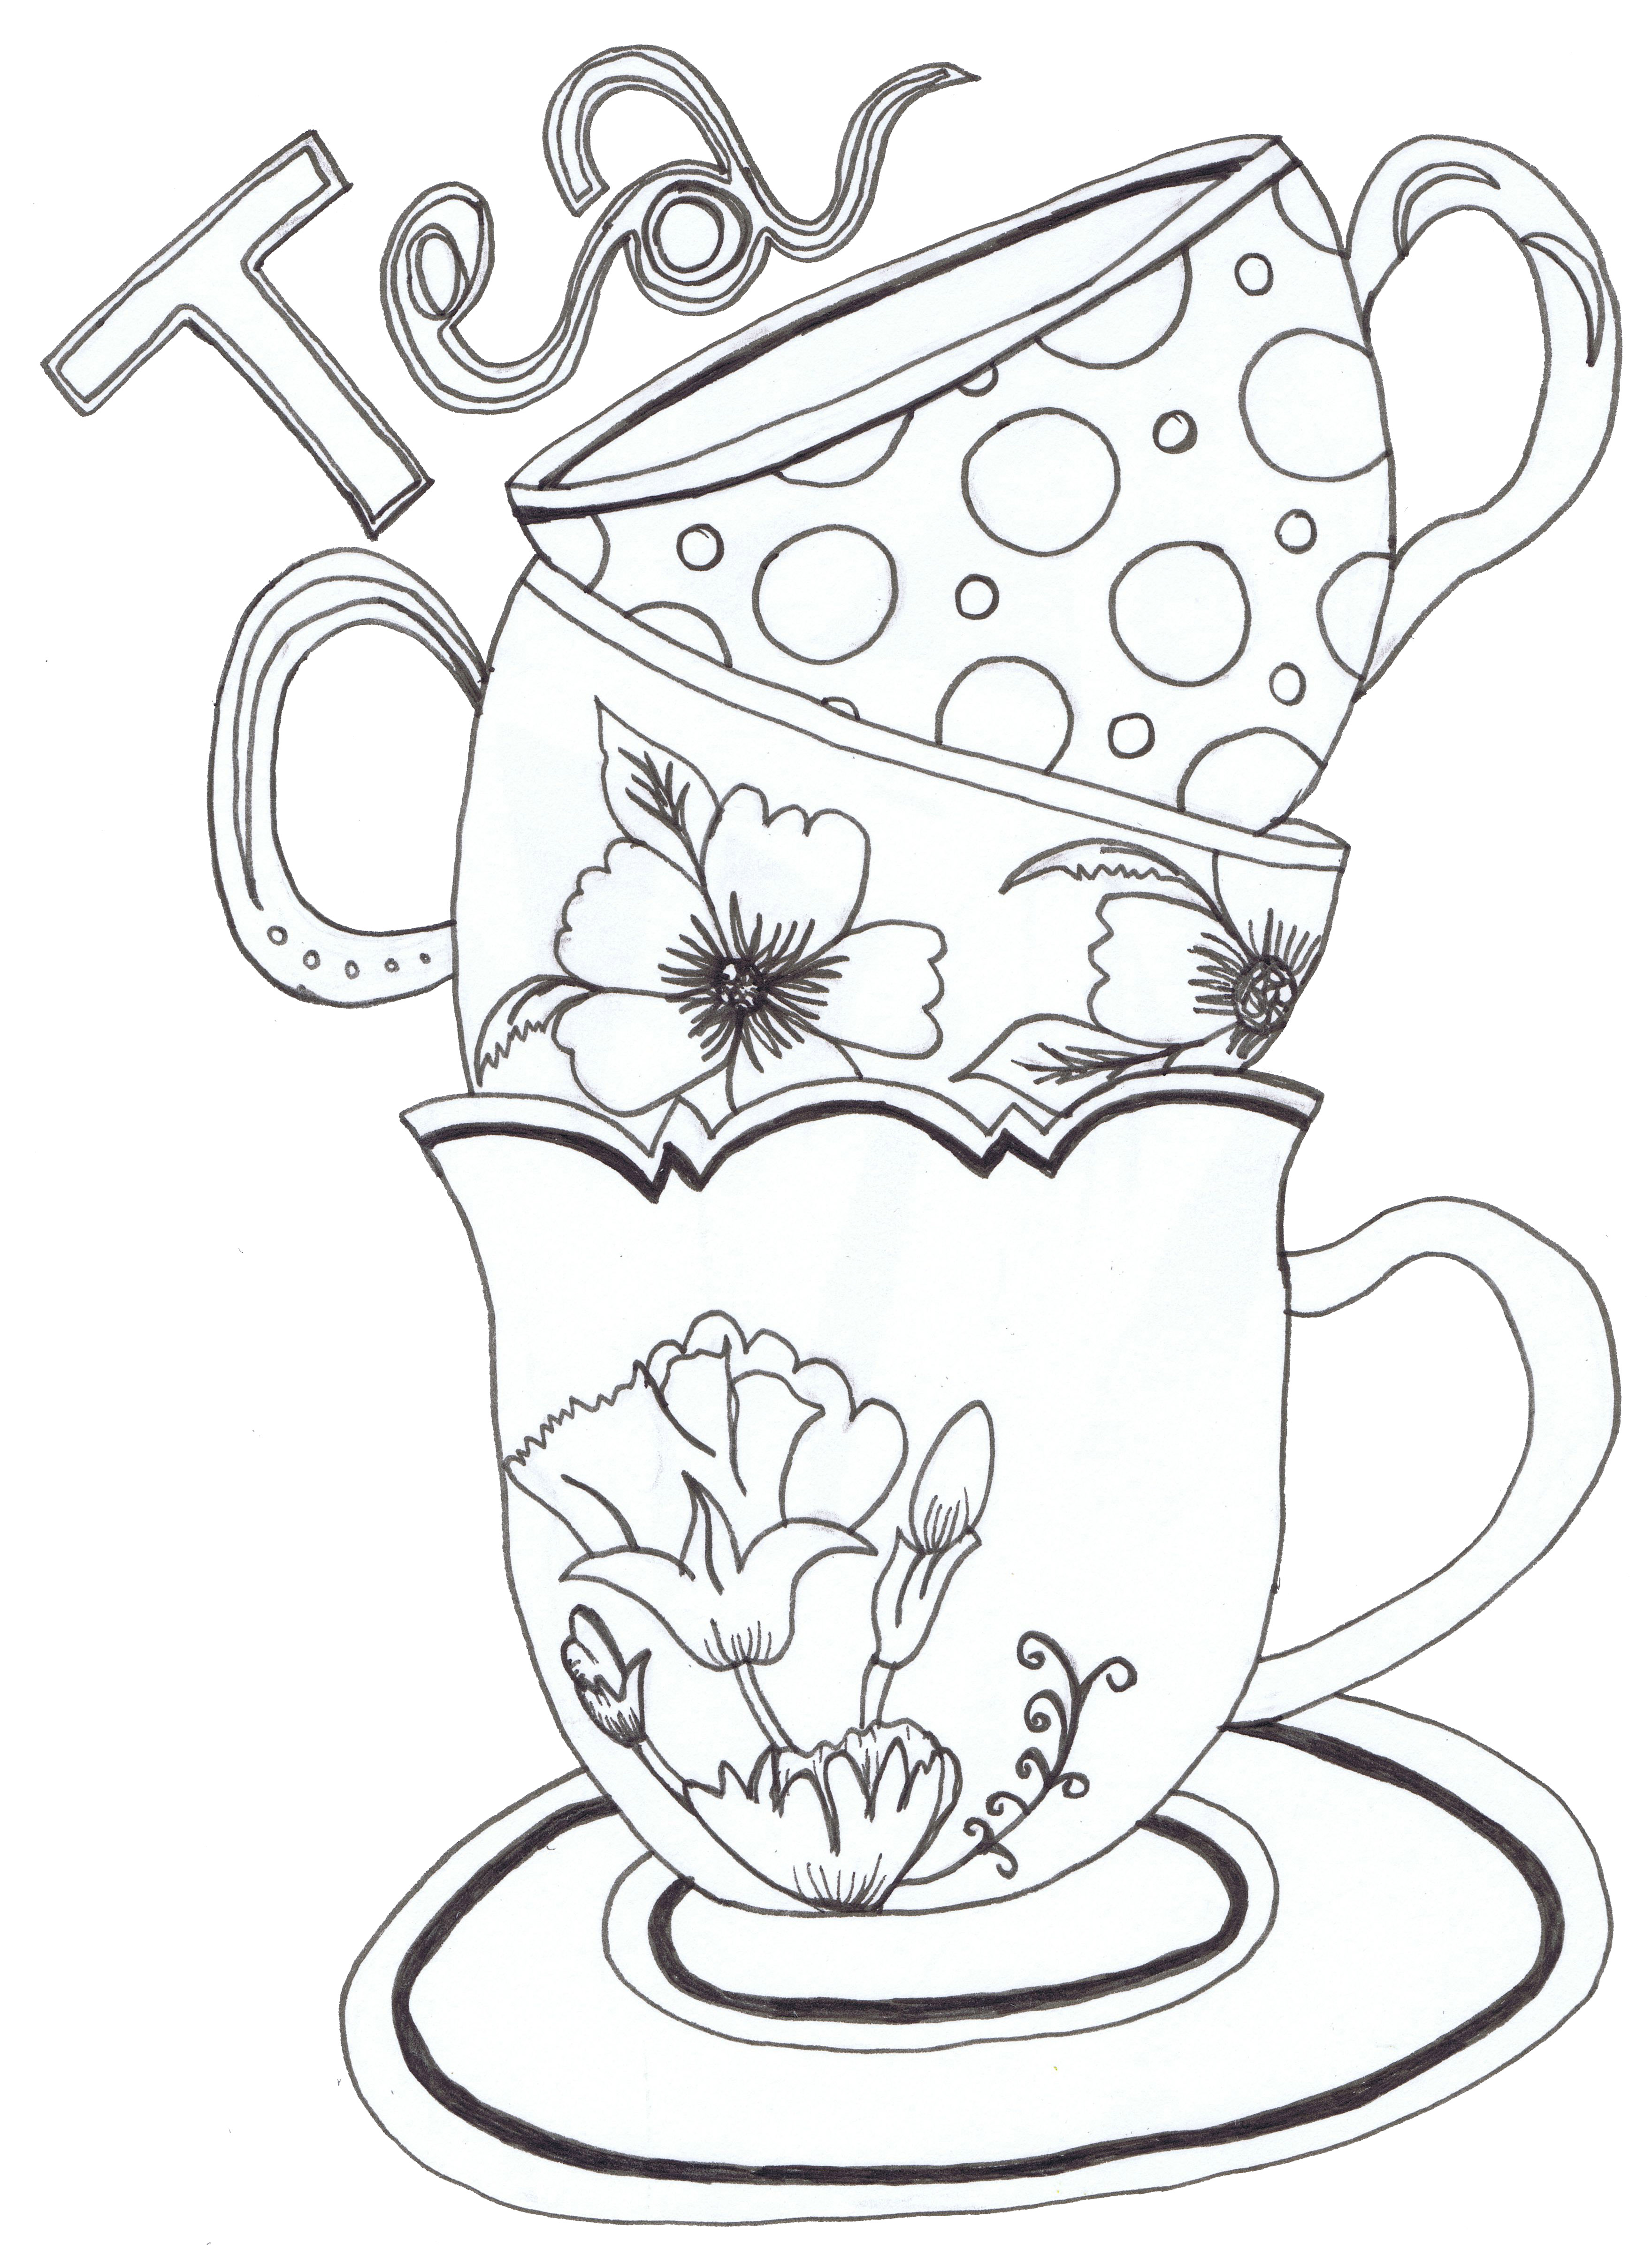 alice-in-wonderland-teacup-drawing-at-getdrawings-free-download